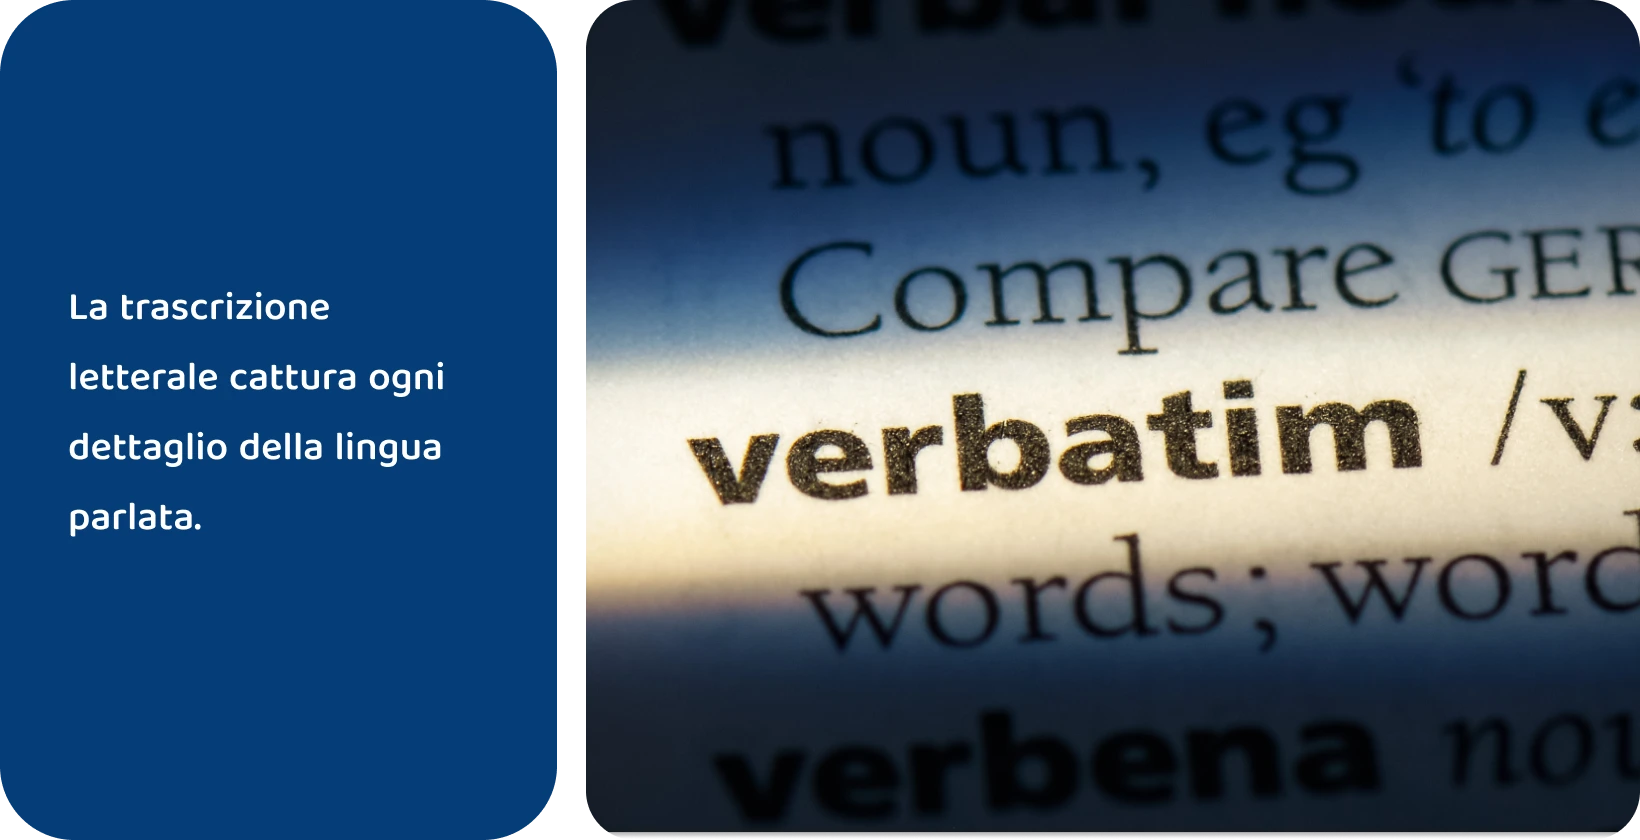 Voce del dizionario della parola 'verbatim' evidenziata, che rappresenta metodi di trascrizione precisi.